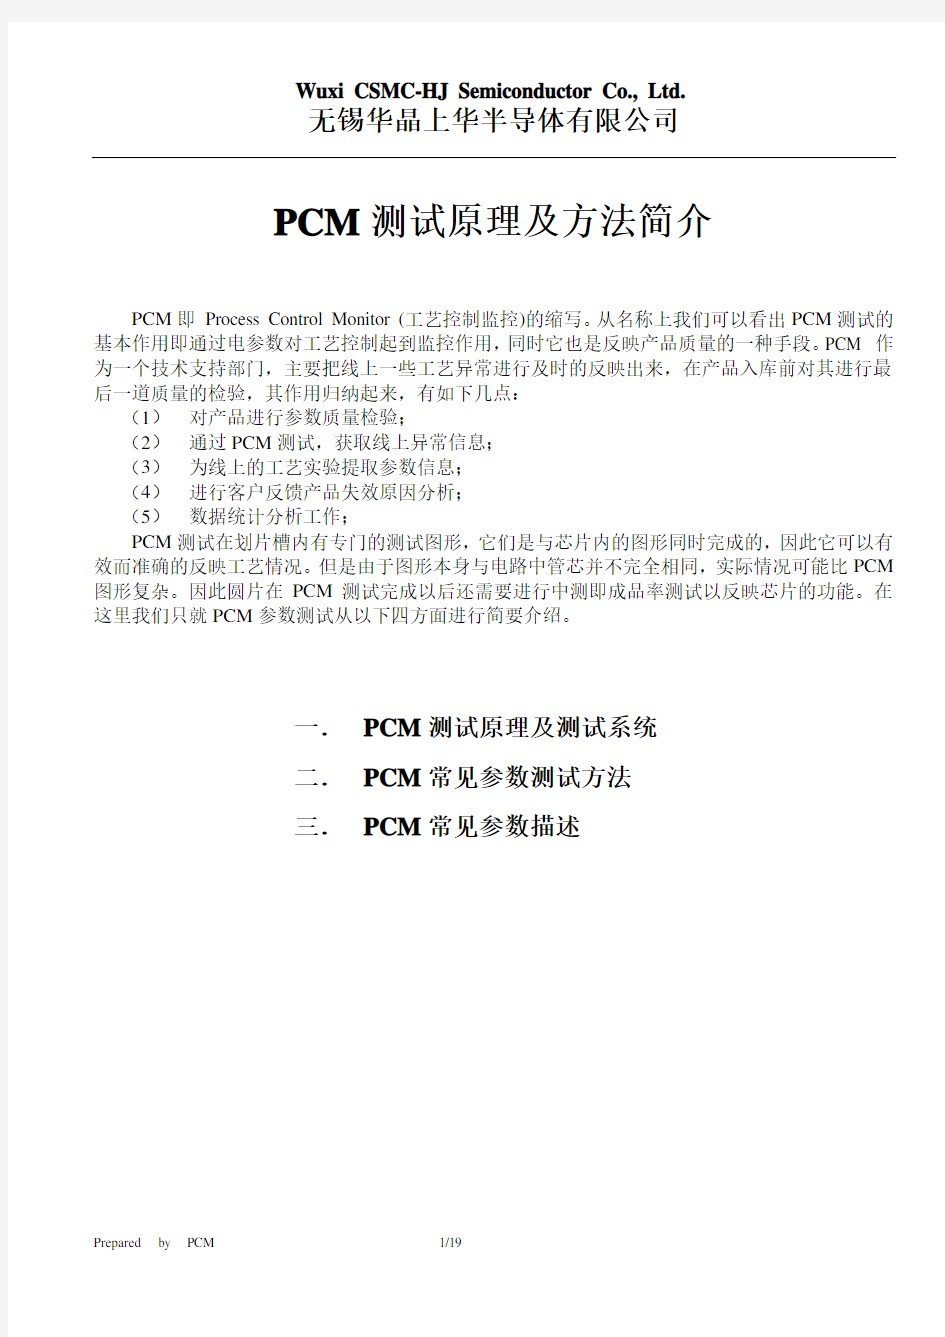 PCM测试原理及方法简介_final